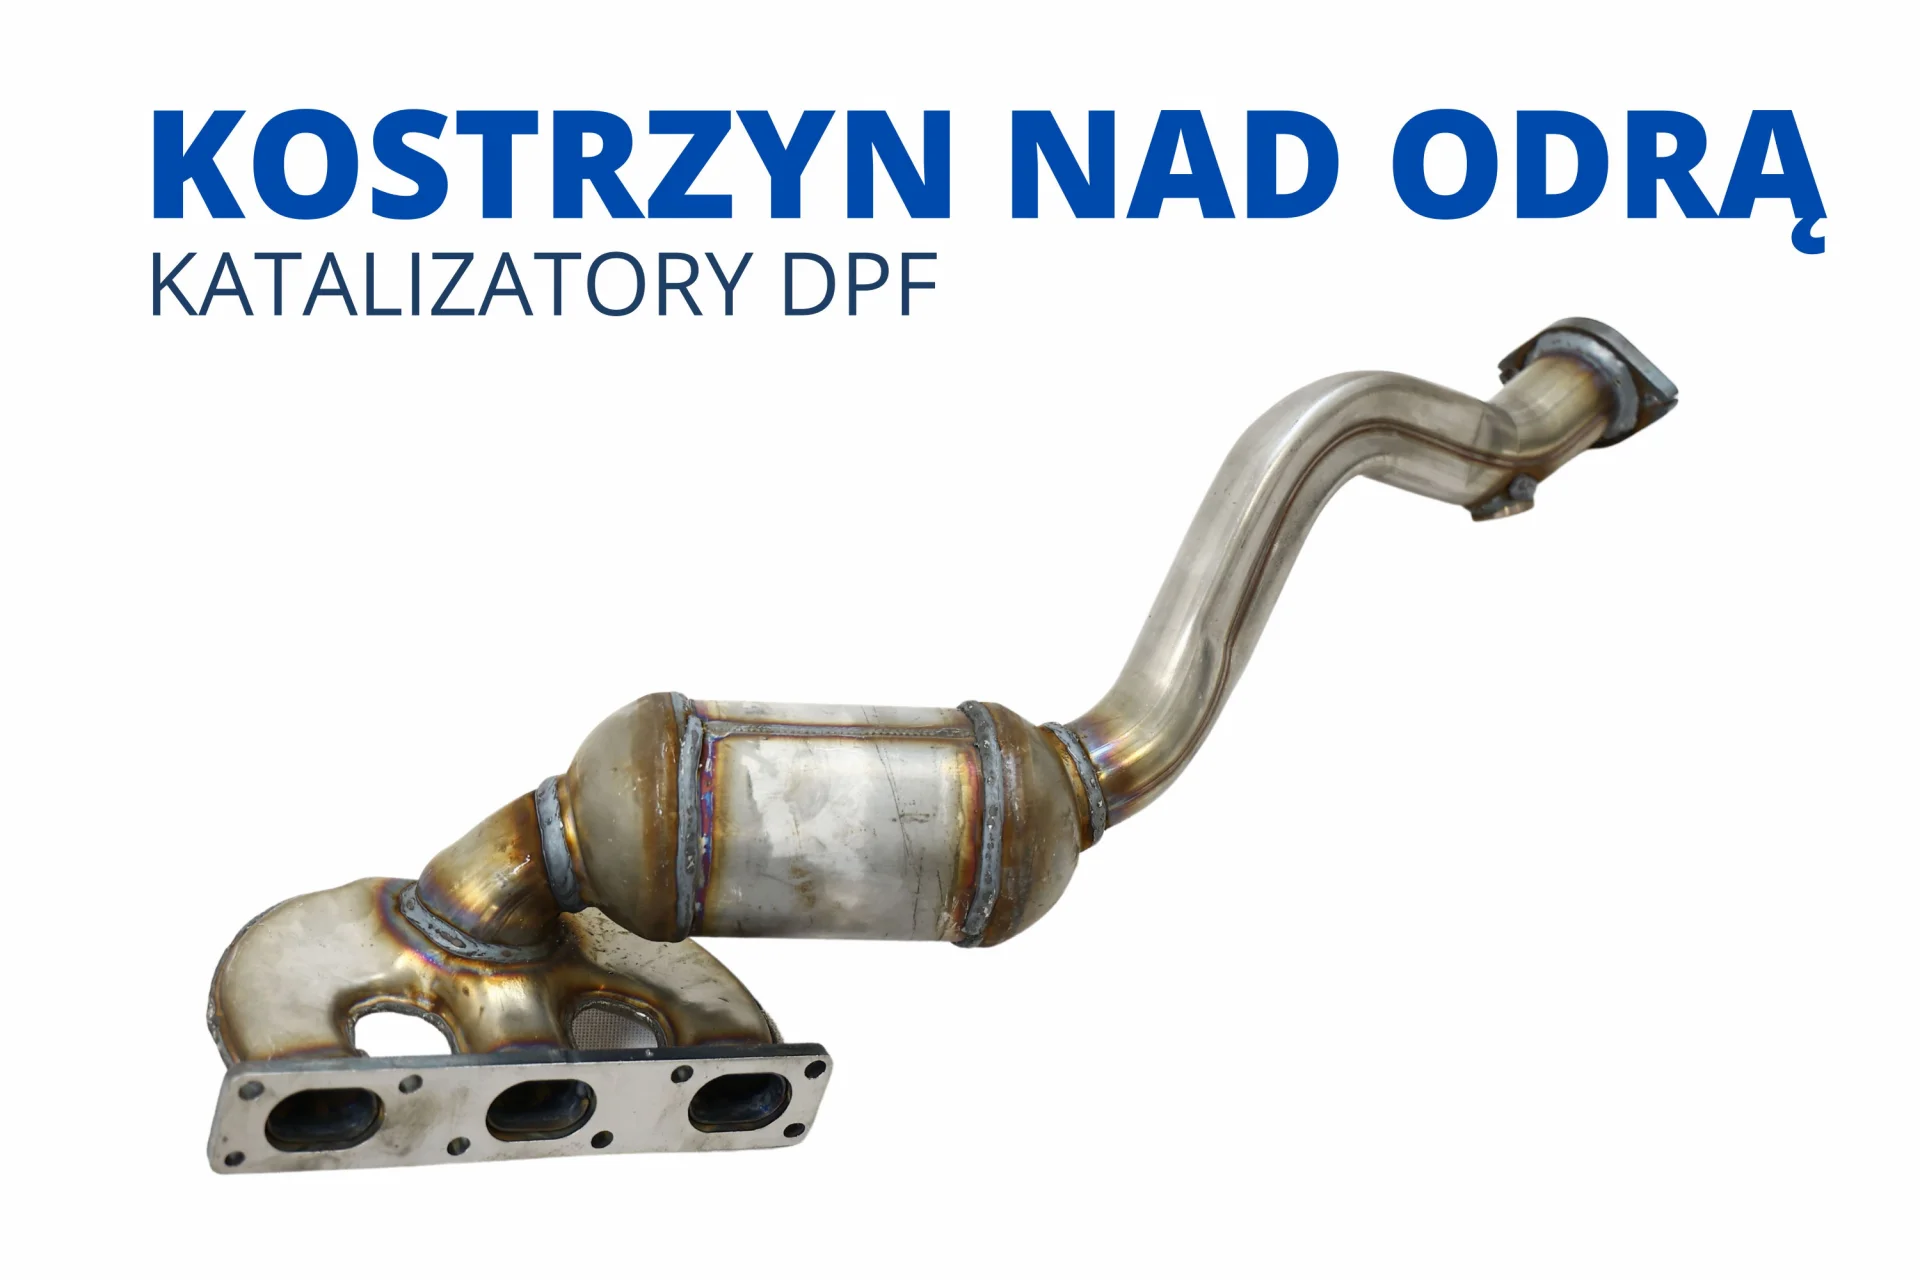 Katalizatory DPF FAP SCR Kostrzyn nad Odrą nowy cena